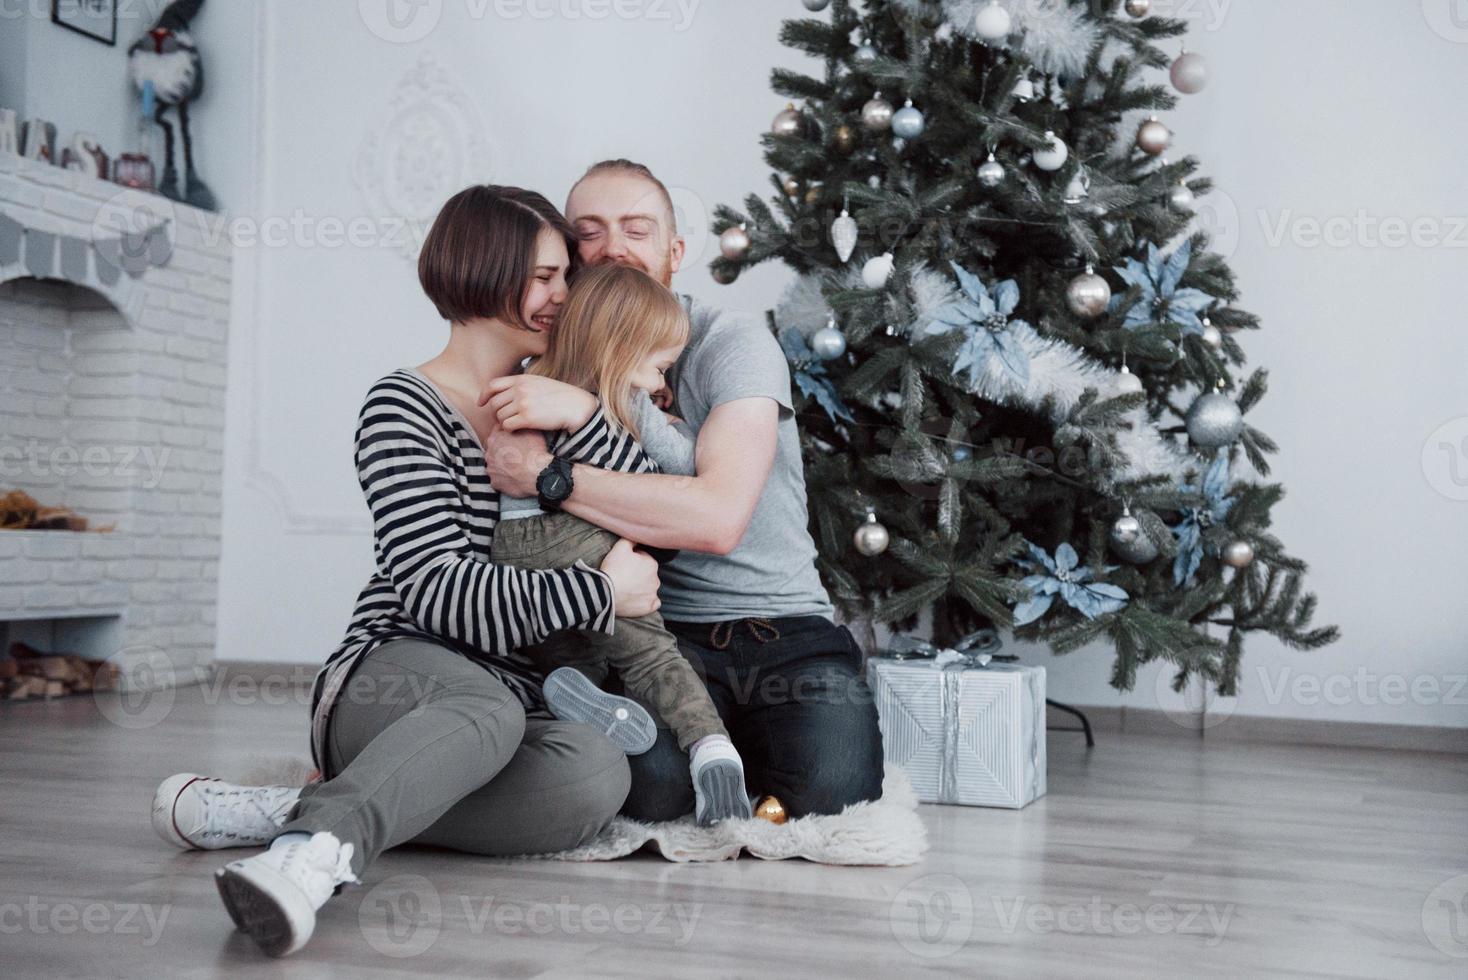 familia feliz en navidad en la mañana abriendo regalos juntos cerca del abeto. el concepto de felicidad y bienestar familiar foto